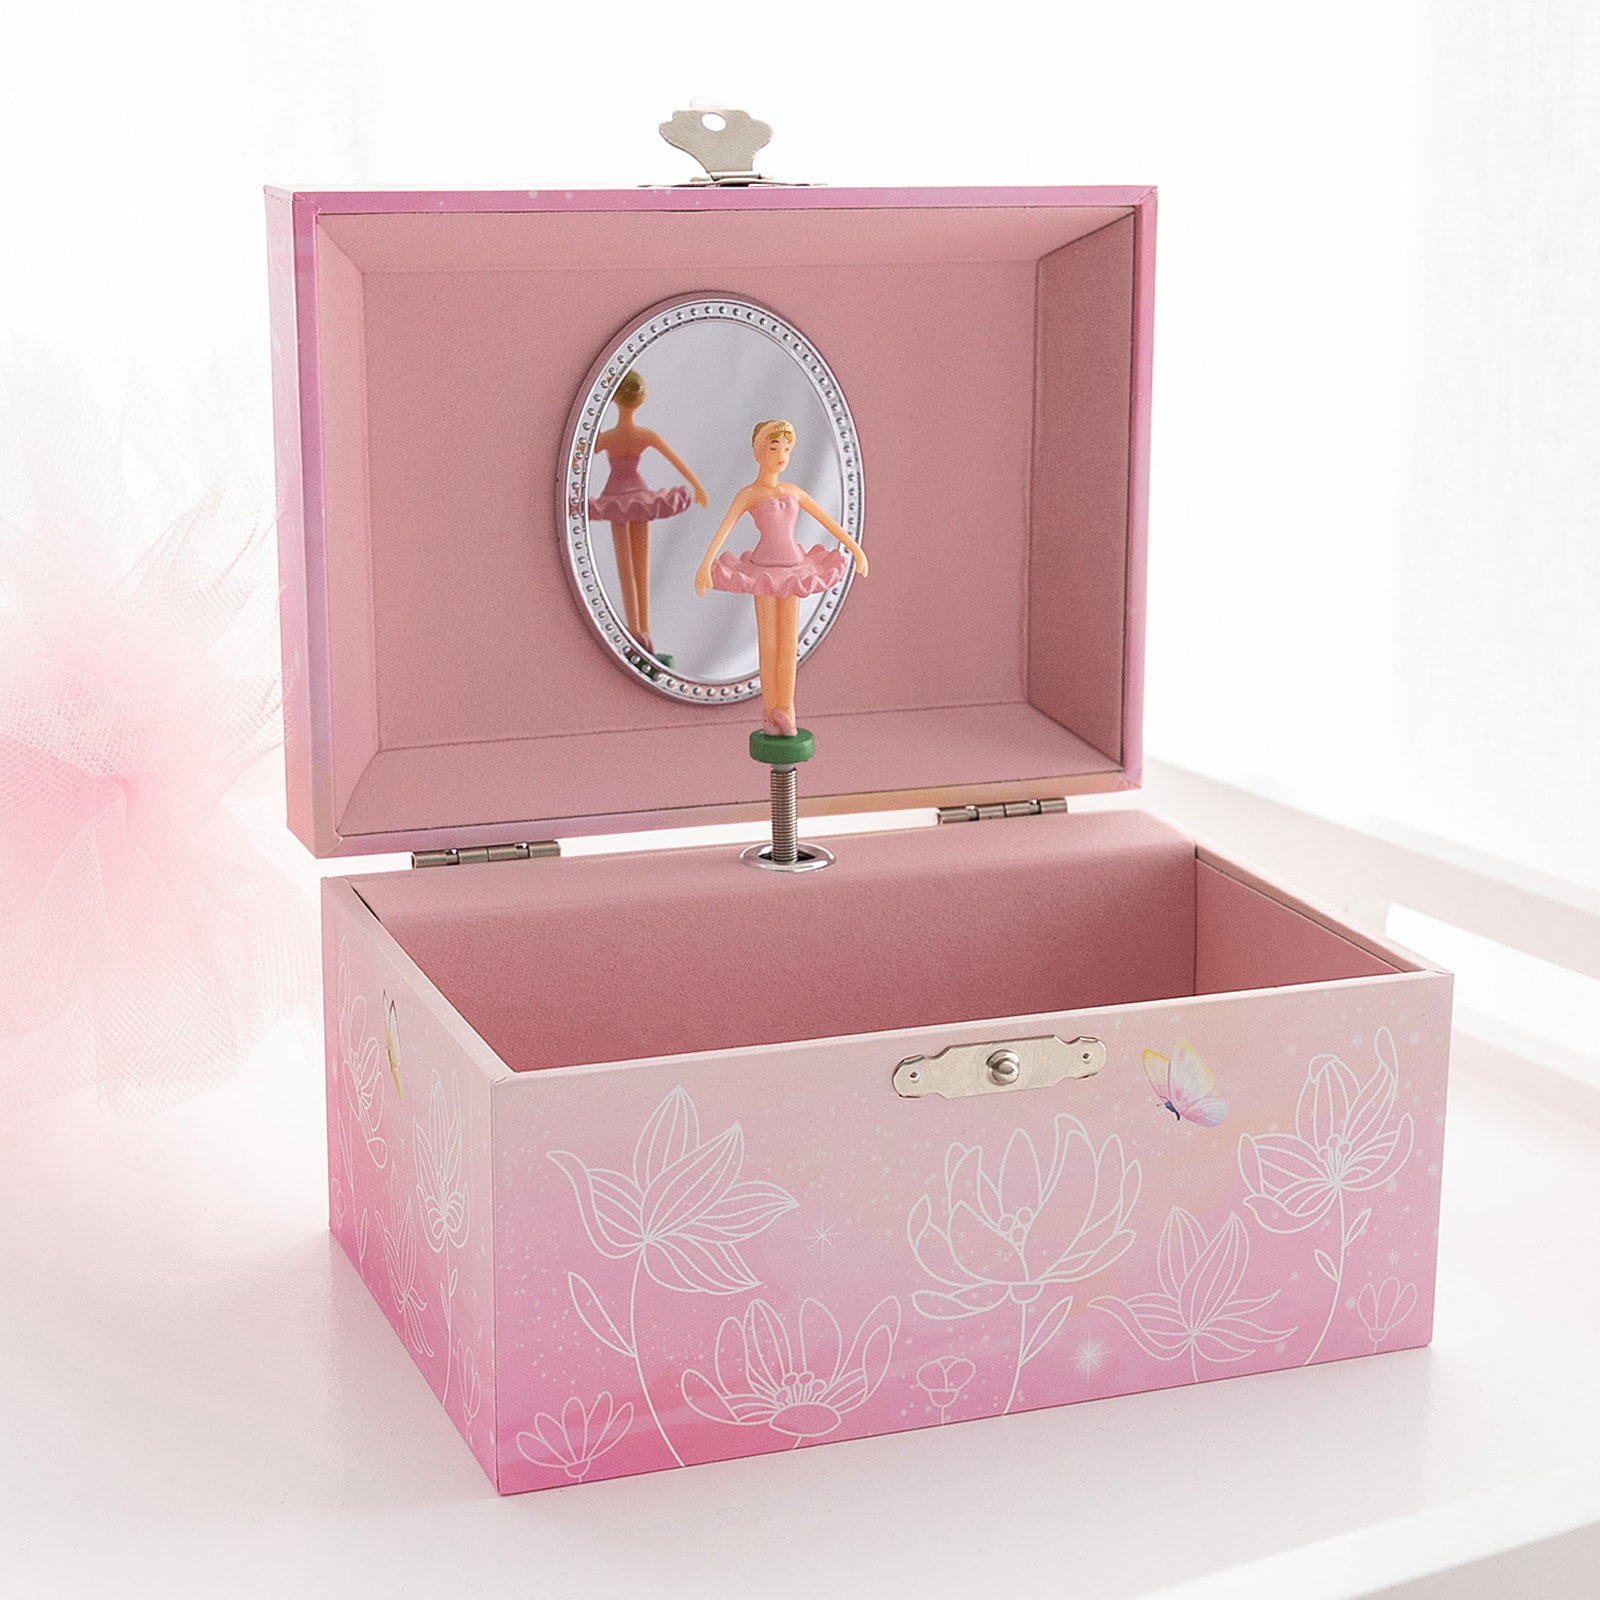 Jozen Gift Wooden Ballerina Musical Jewelry Box with Mirror&Tassel Key for Kids,Girls,Musical Keepsake Gift,Kid's Jewelry Storage Music Box White